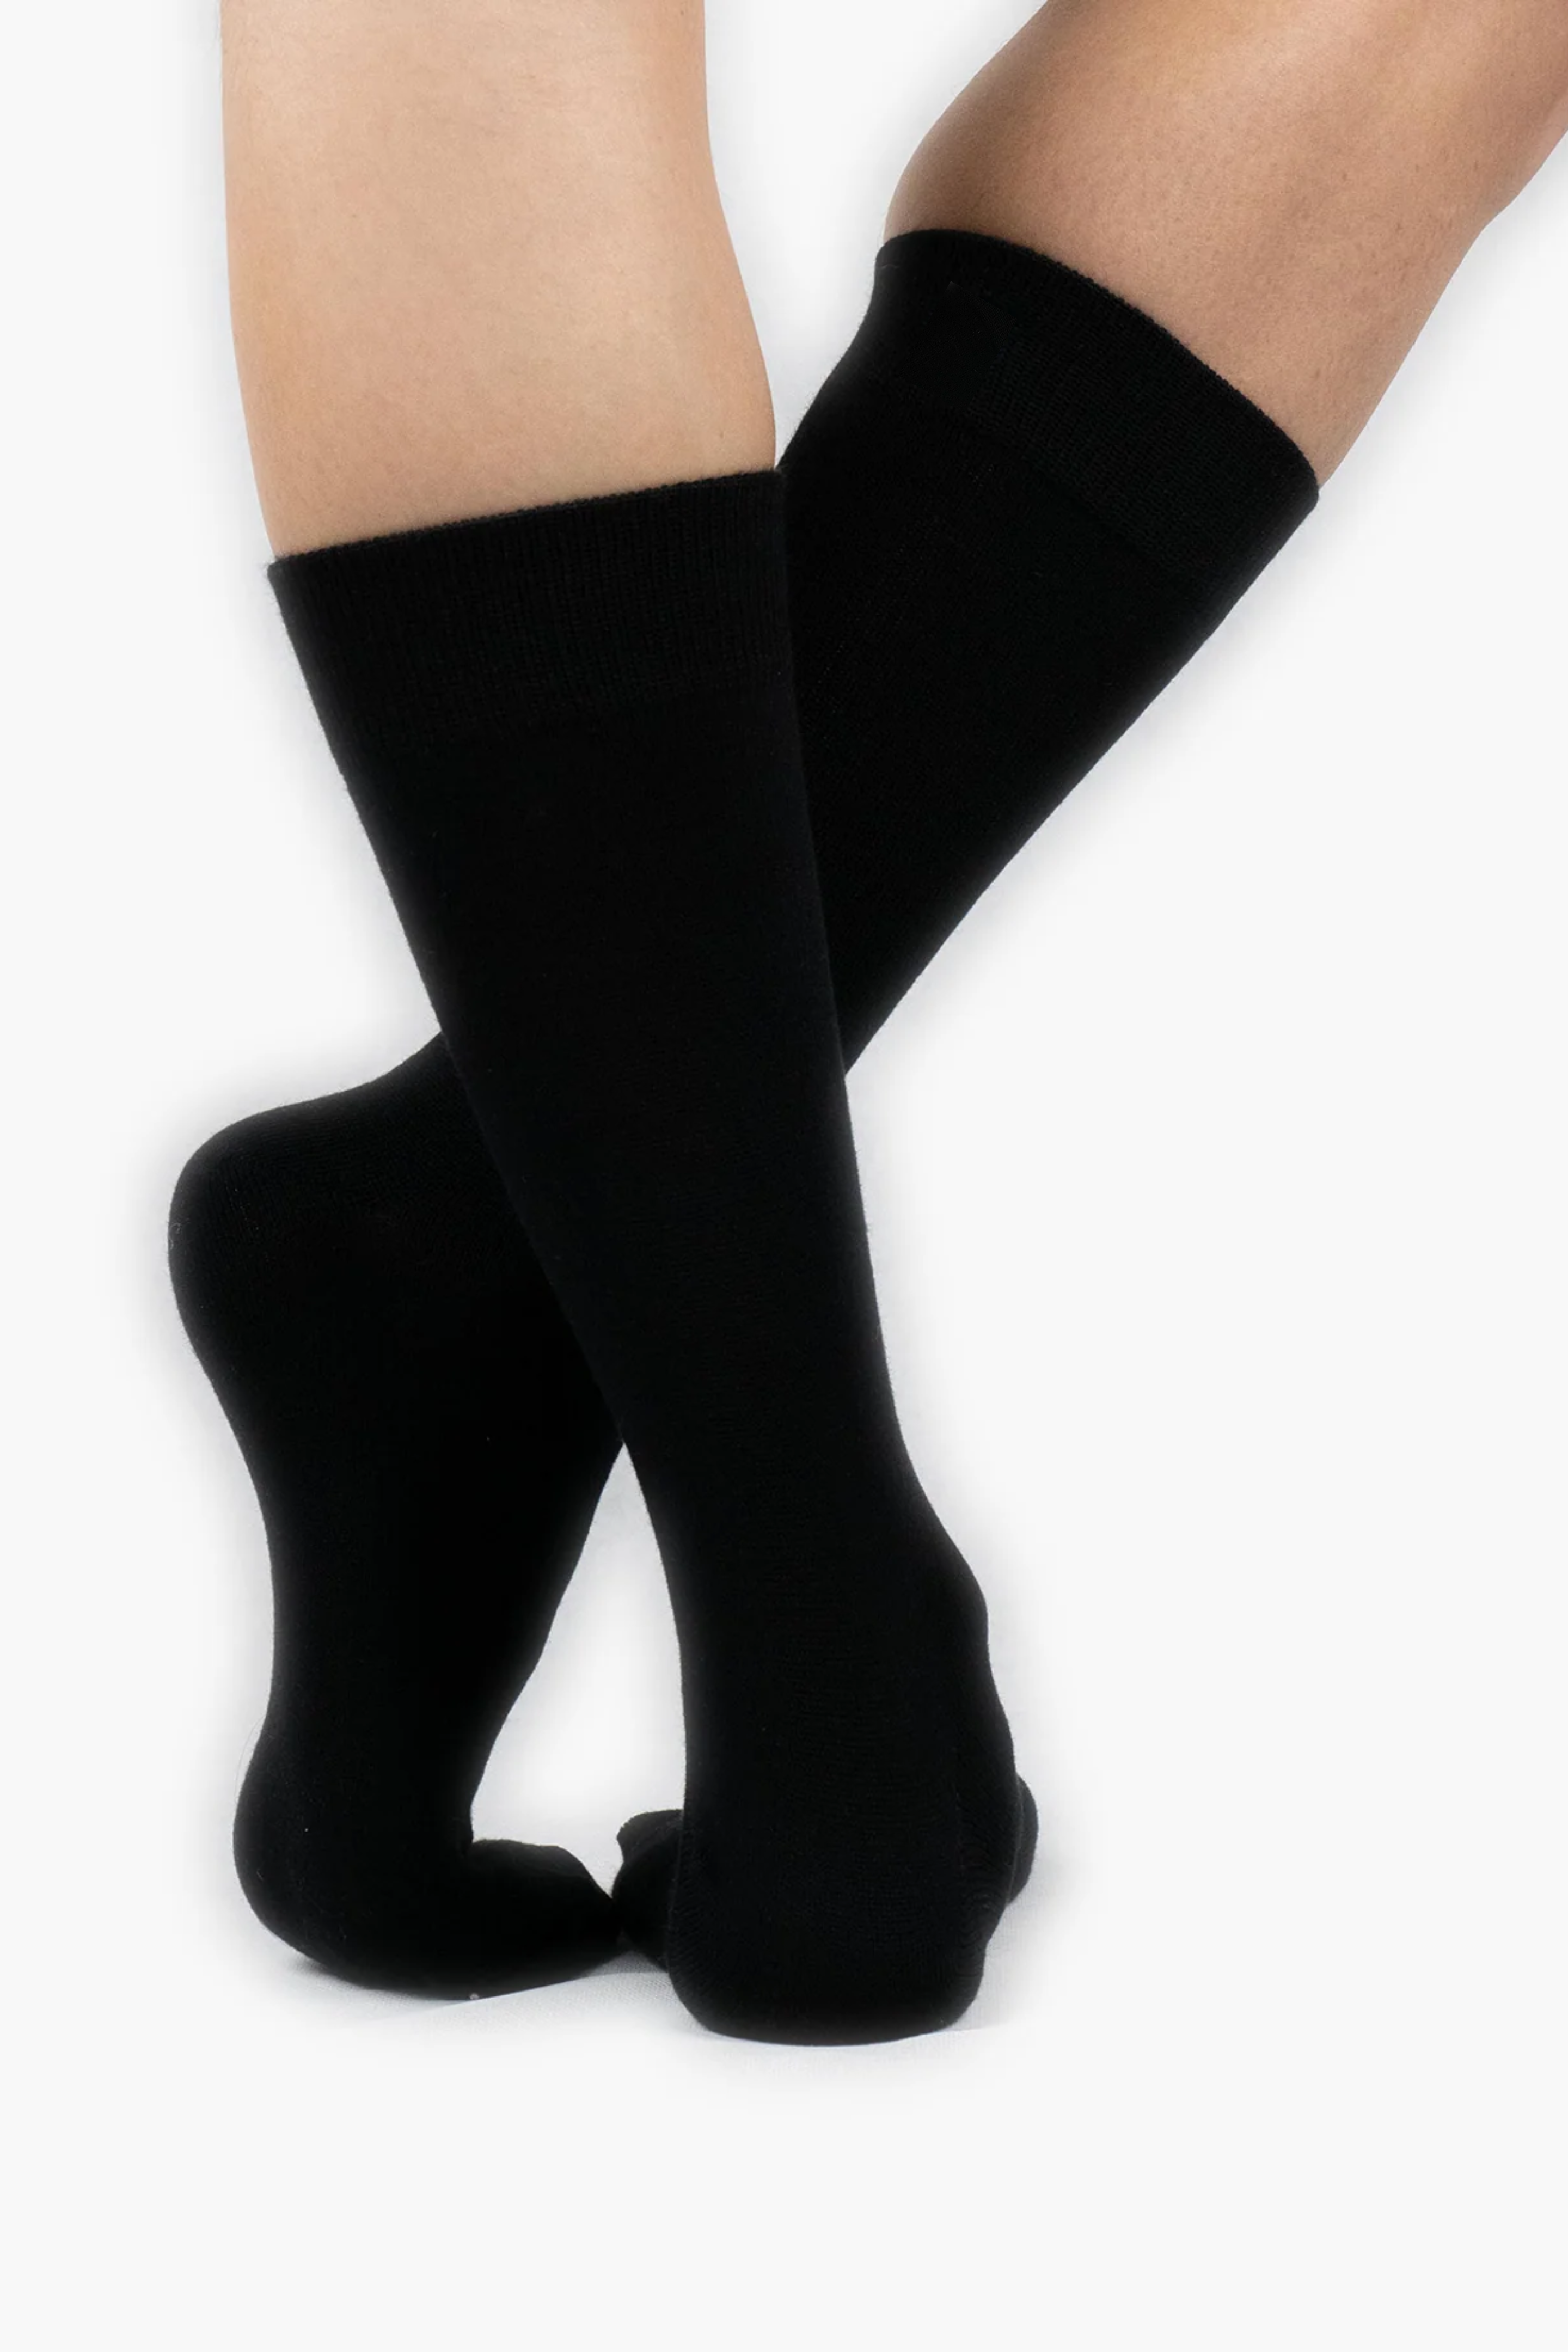 Mercerized Solid Socks (Pack of 5) Plain